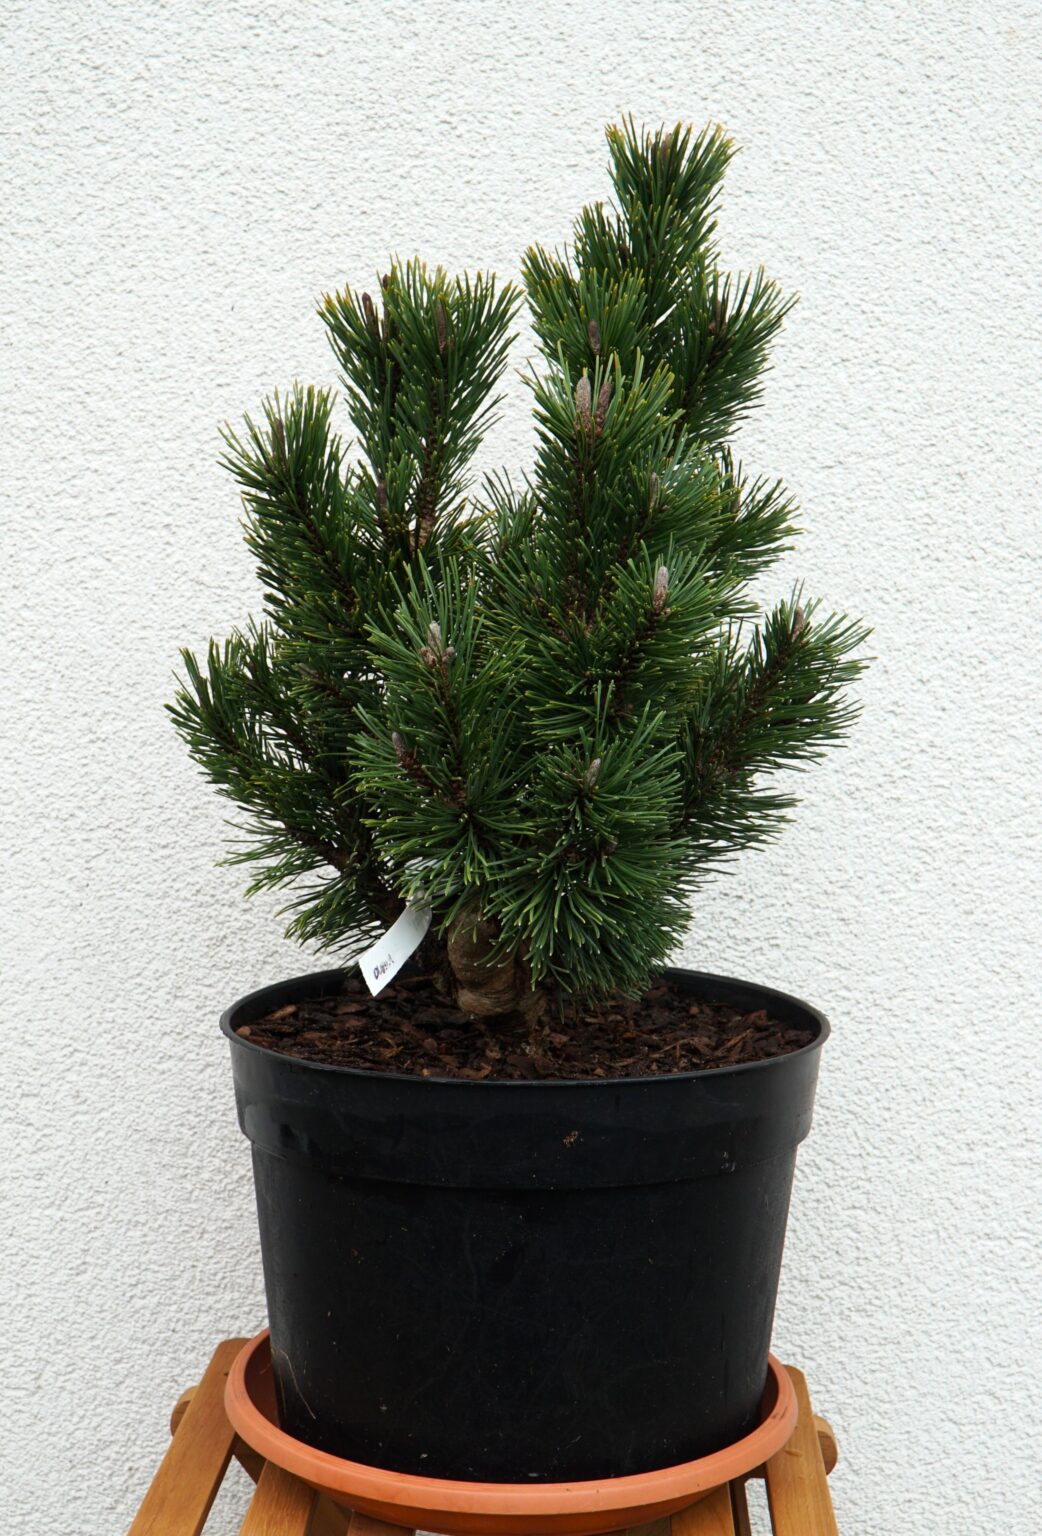 SOSNA GÓRSKA ANDRZEJ Pinus mugo